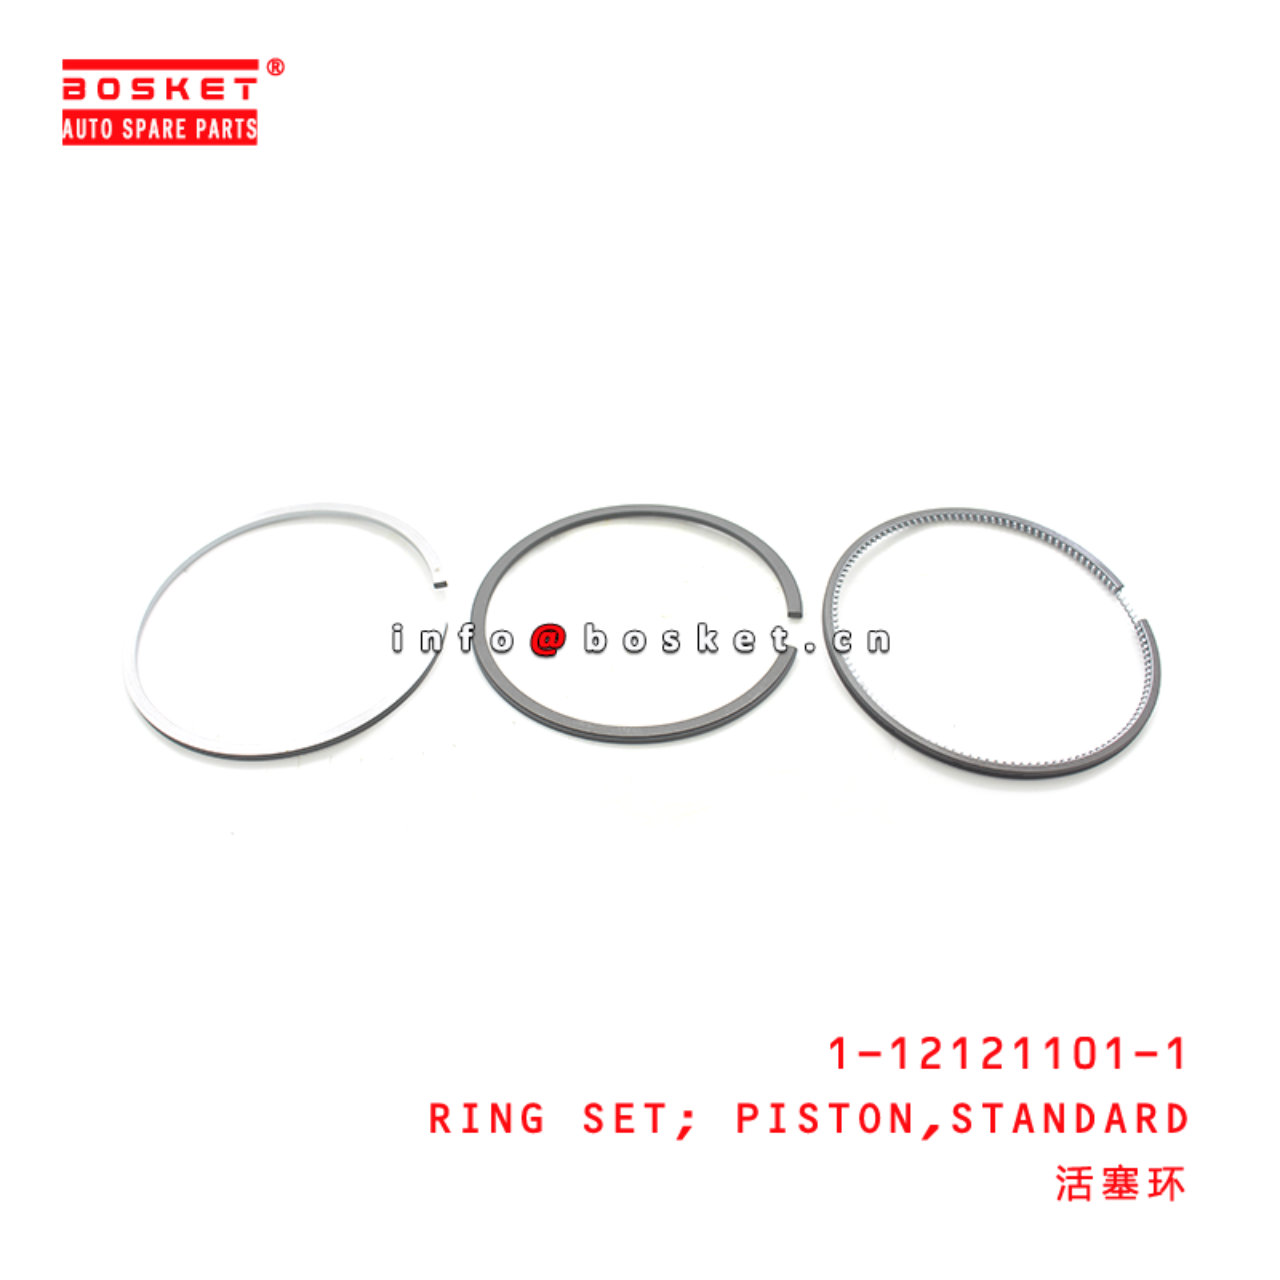 1-12121101-1 Standard Piston Ring Set Suitable for ISUZU FSR12 6BG1 1121211011